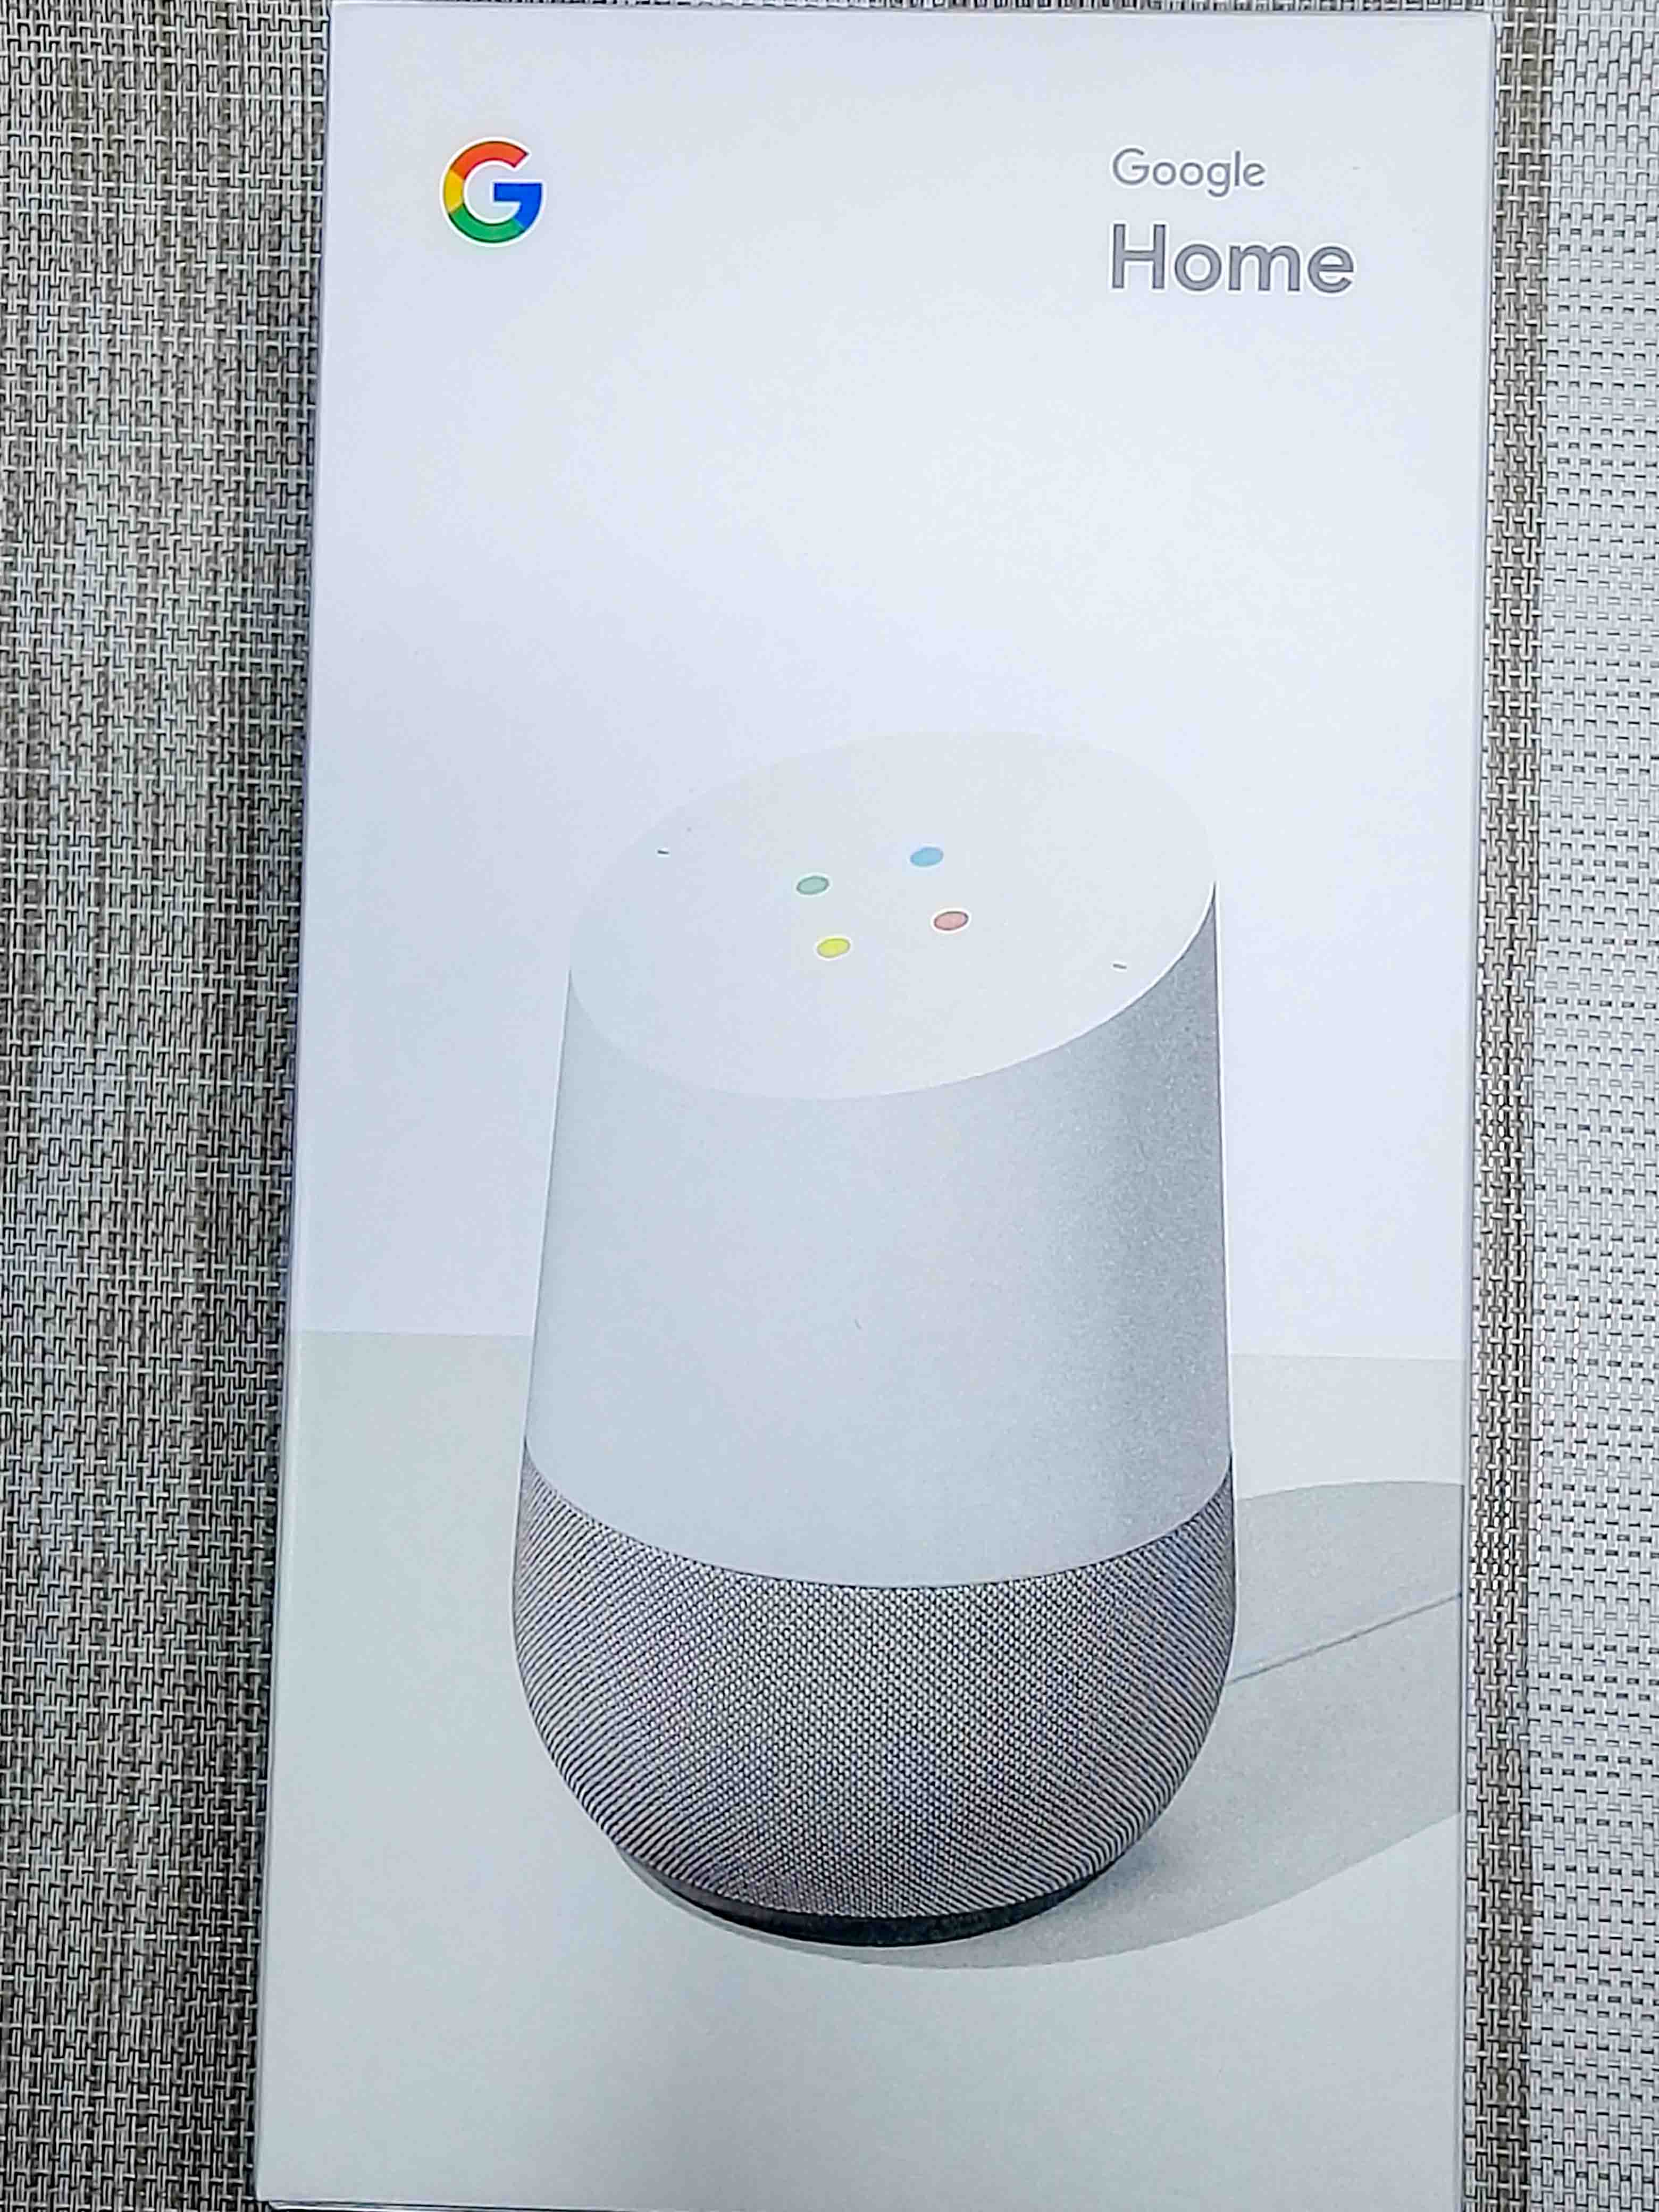 将来に備え父の日にスマートスピーカー『Google Home』を選んだ理由